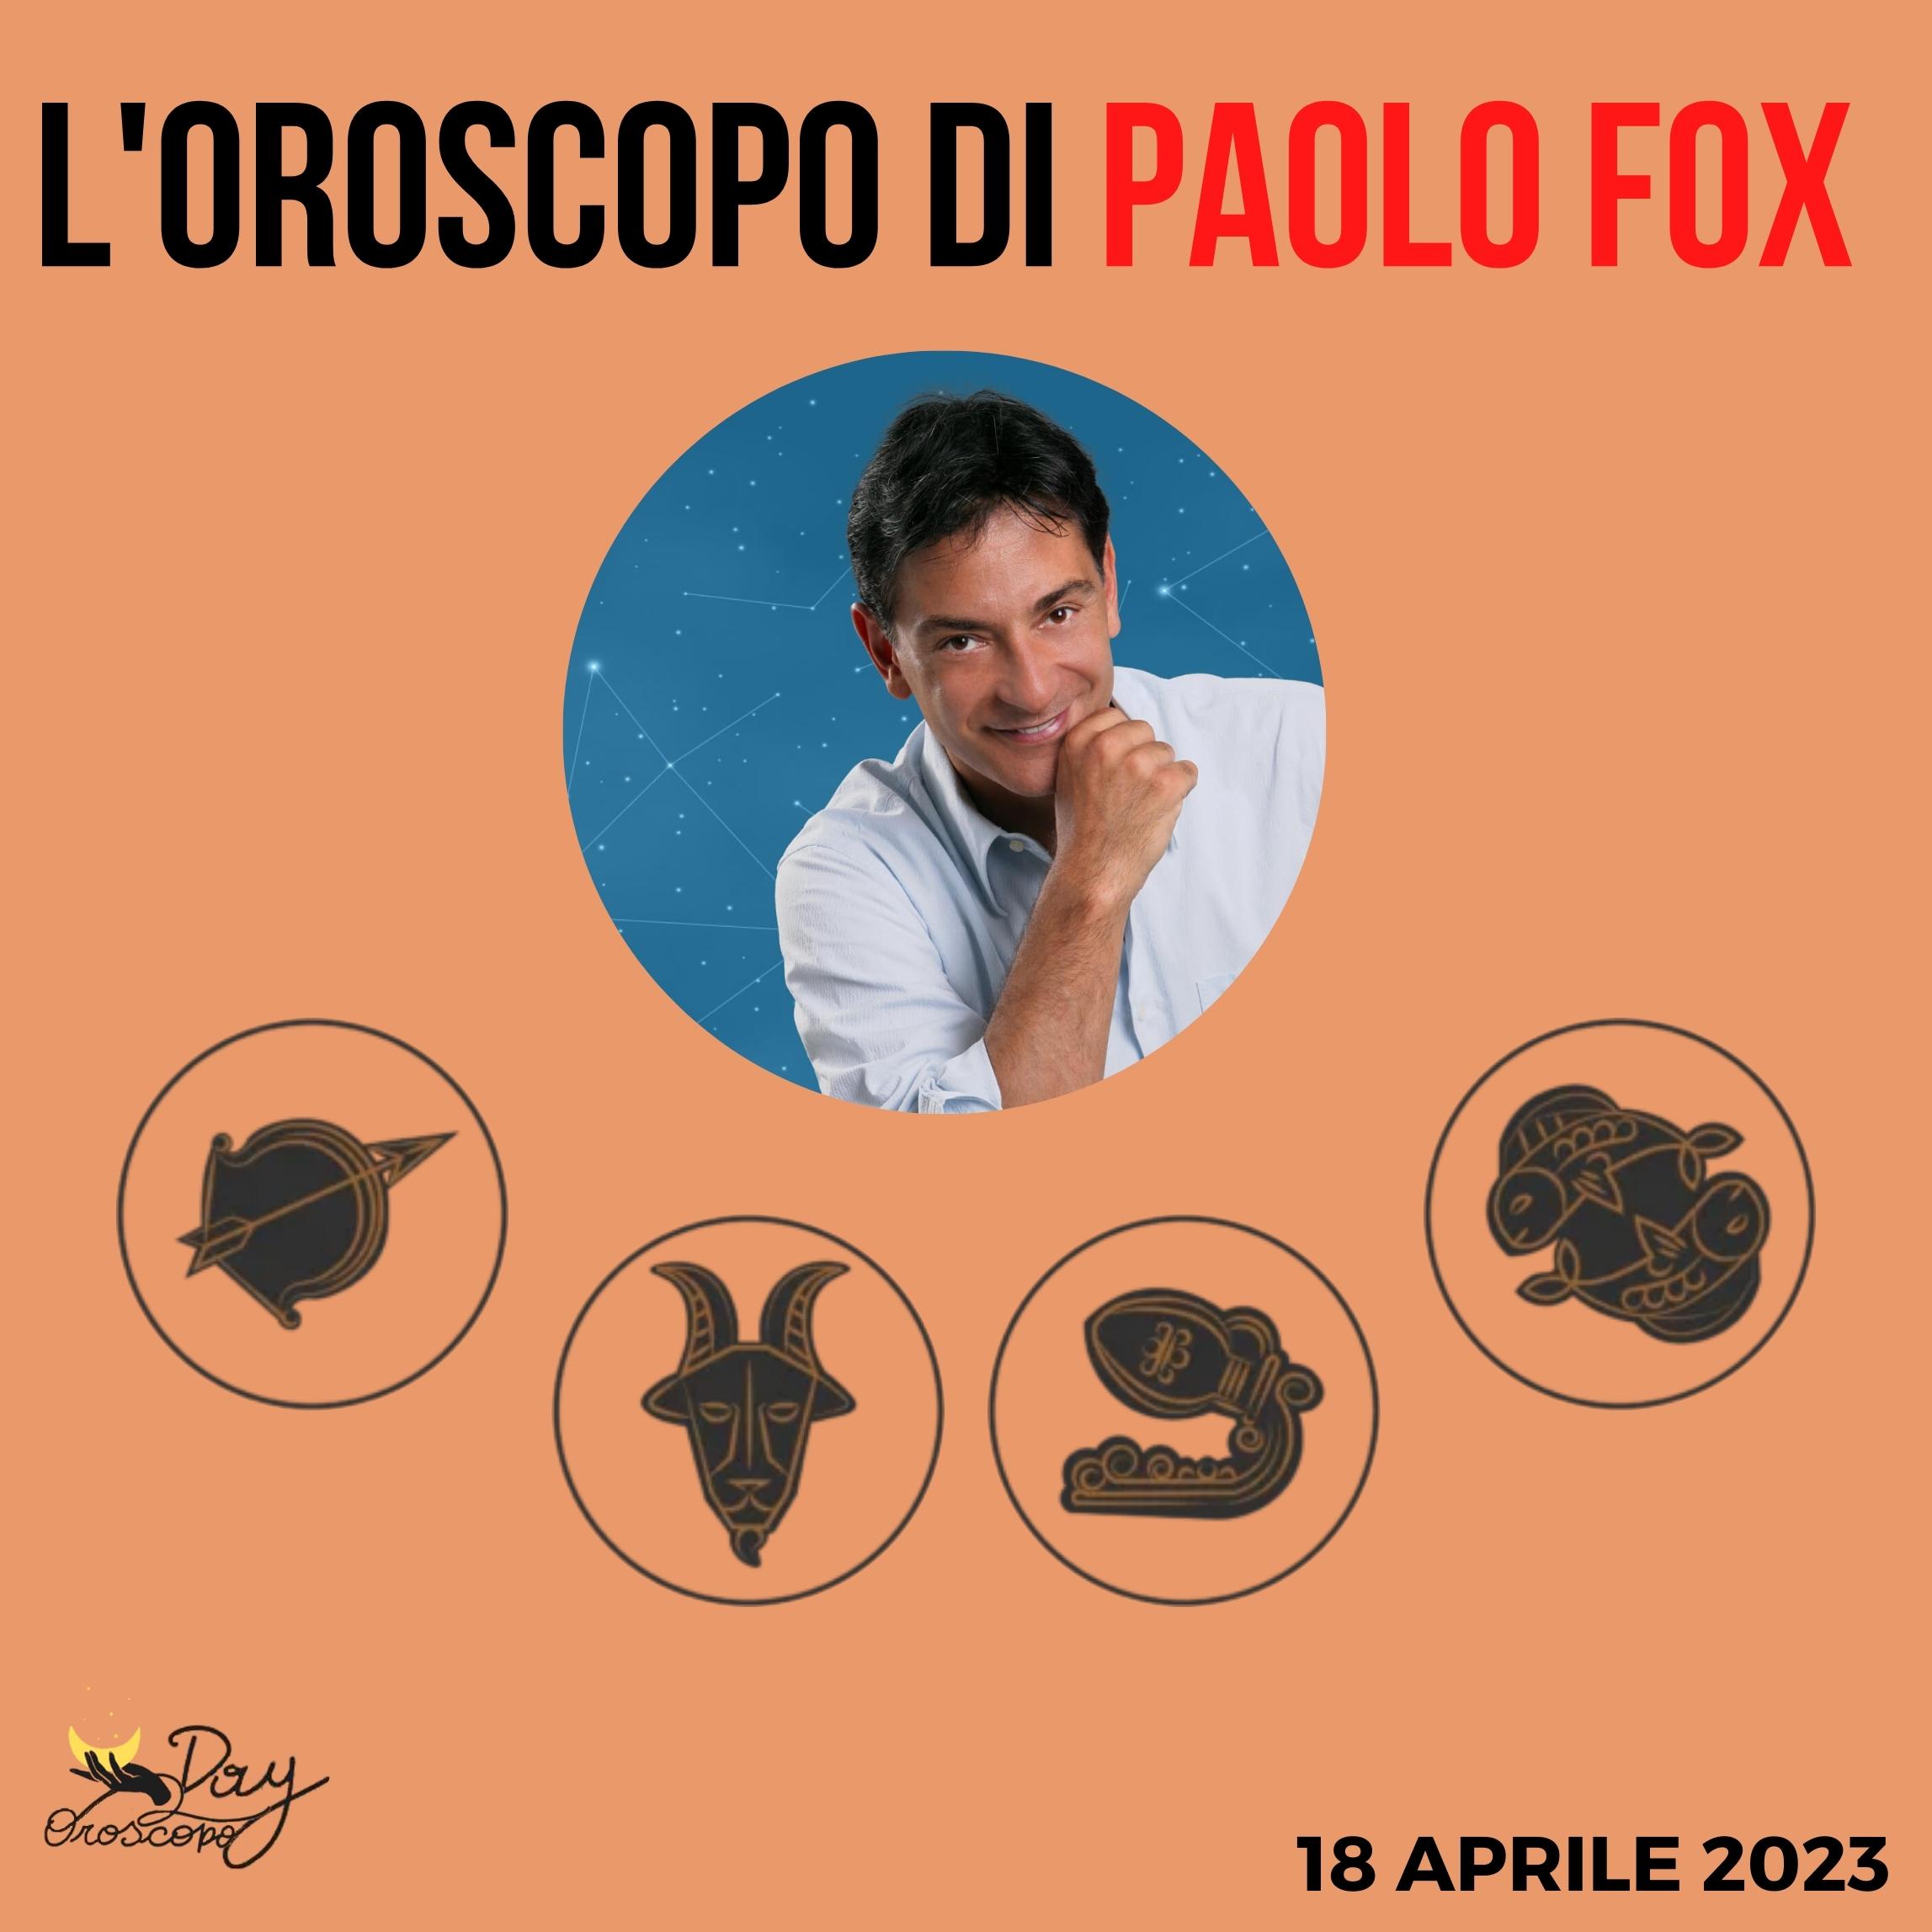 Oroscopo oggi Paolo Fox 18 aprile 2023 Sagittario Capricorno Acquario Pesci